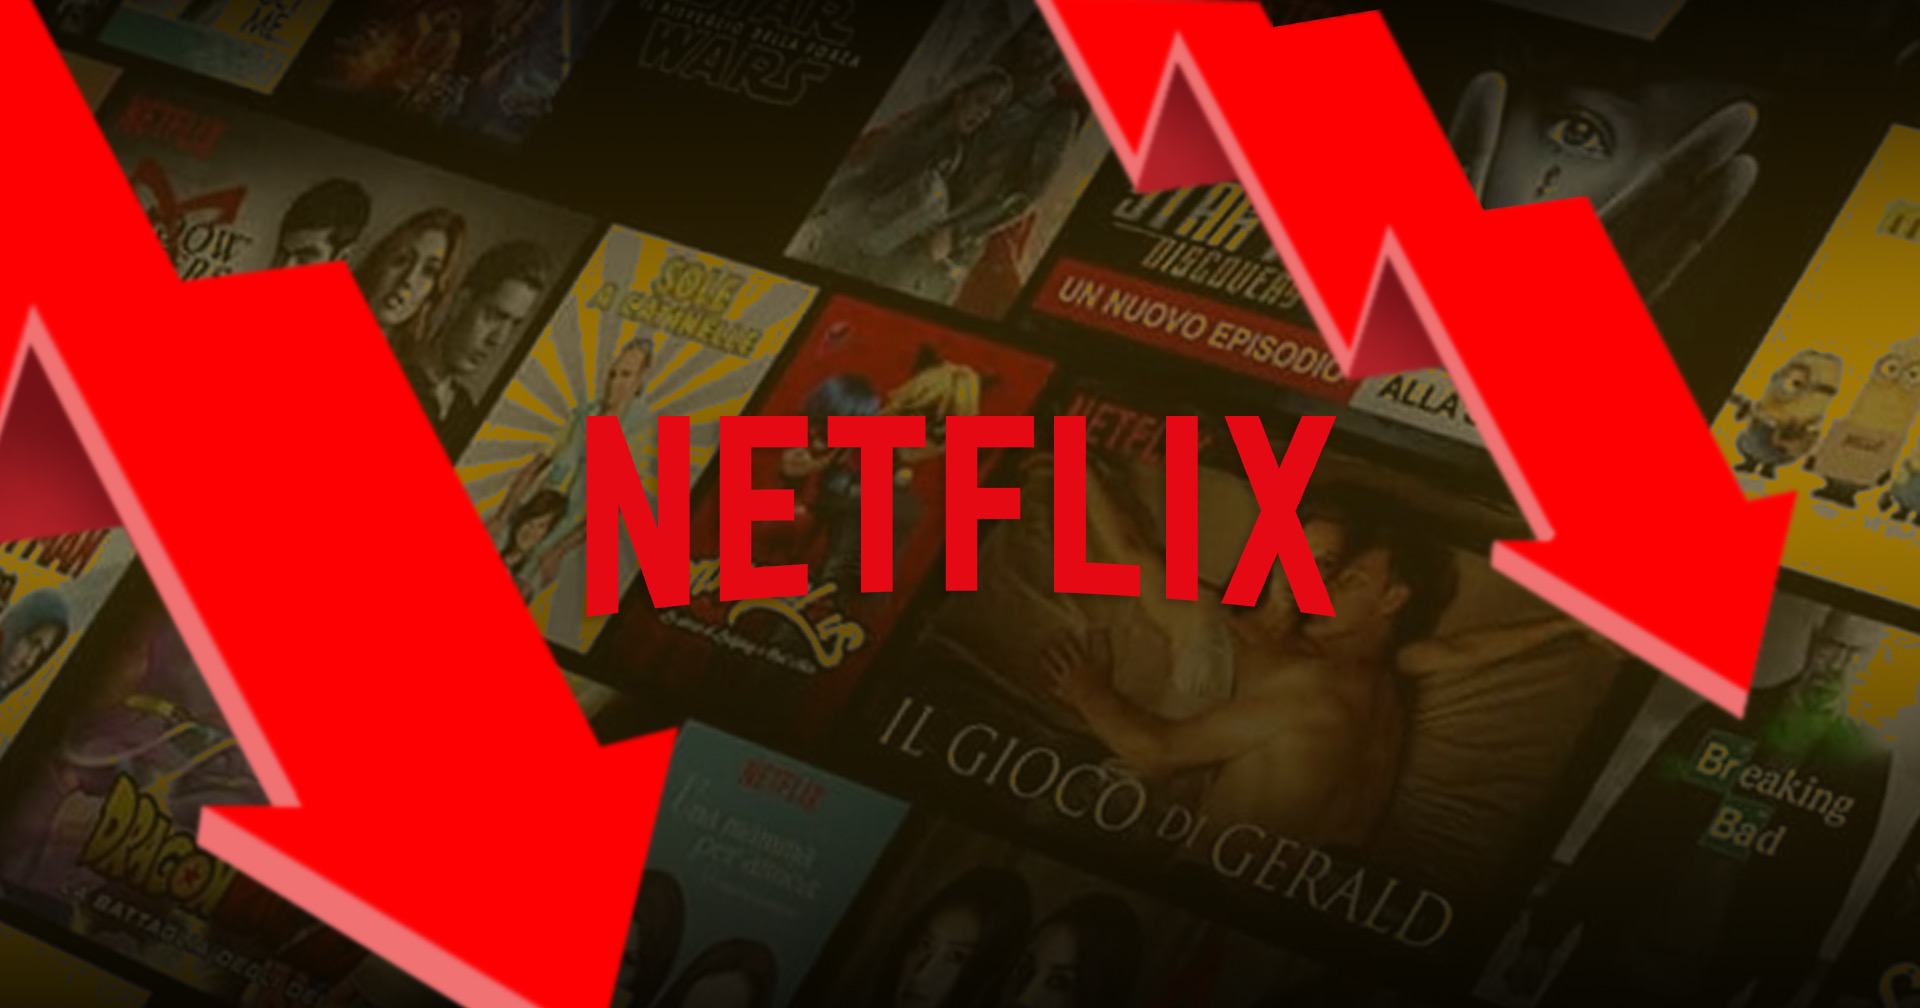 การสะดุดของ Netflix เริ่มส่งสัญญาณเตือนต่อธุรกิจสตรีมมิงเจ้าอื่นว่า “มีให้ดูเยอะเกินไป?”